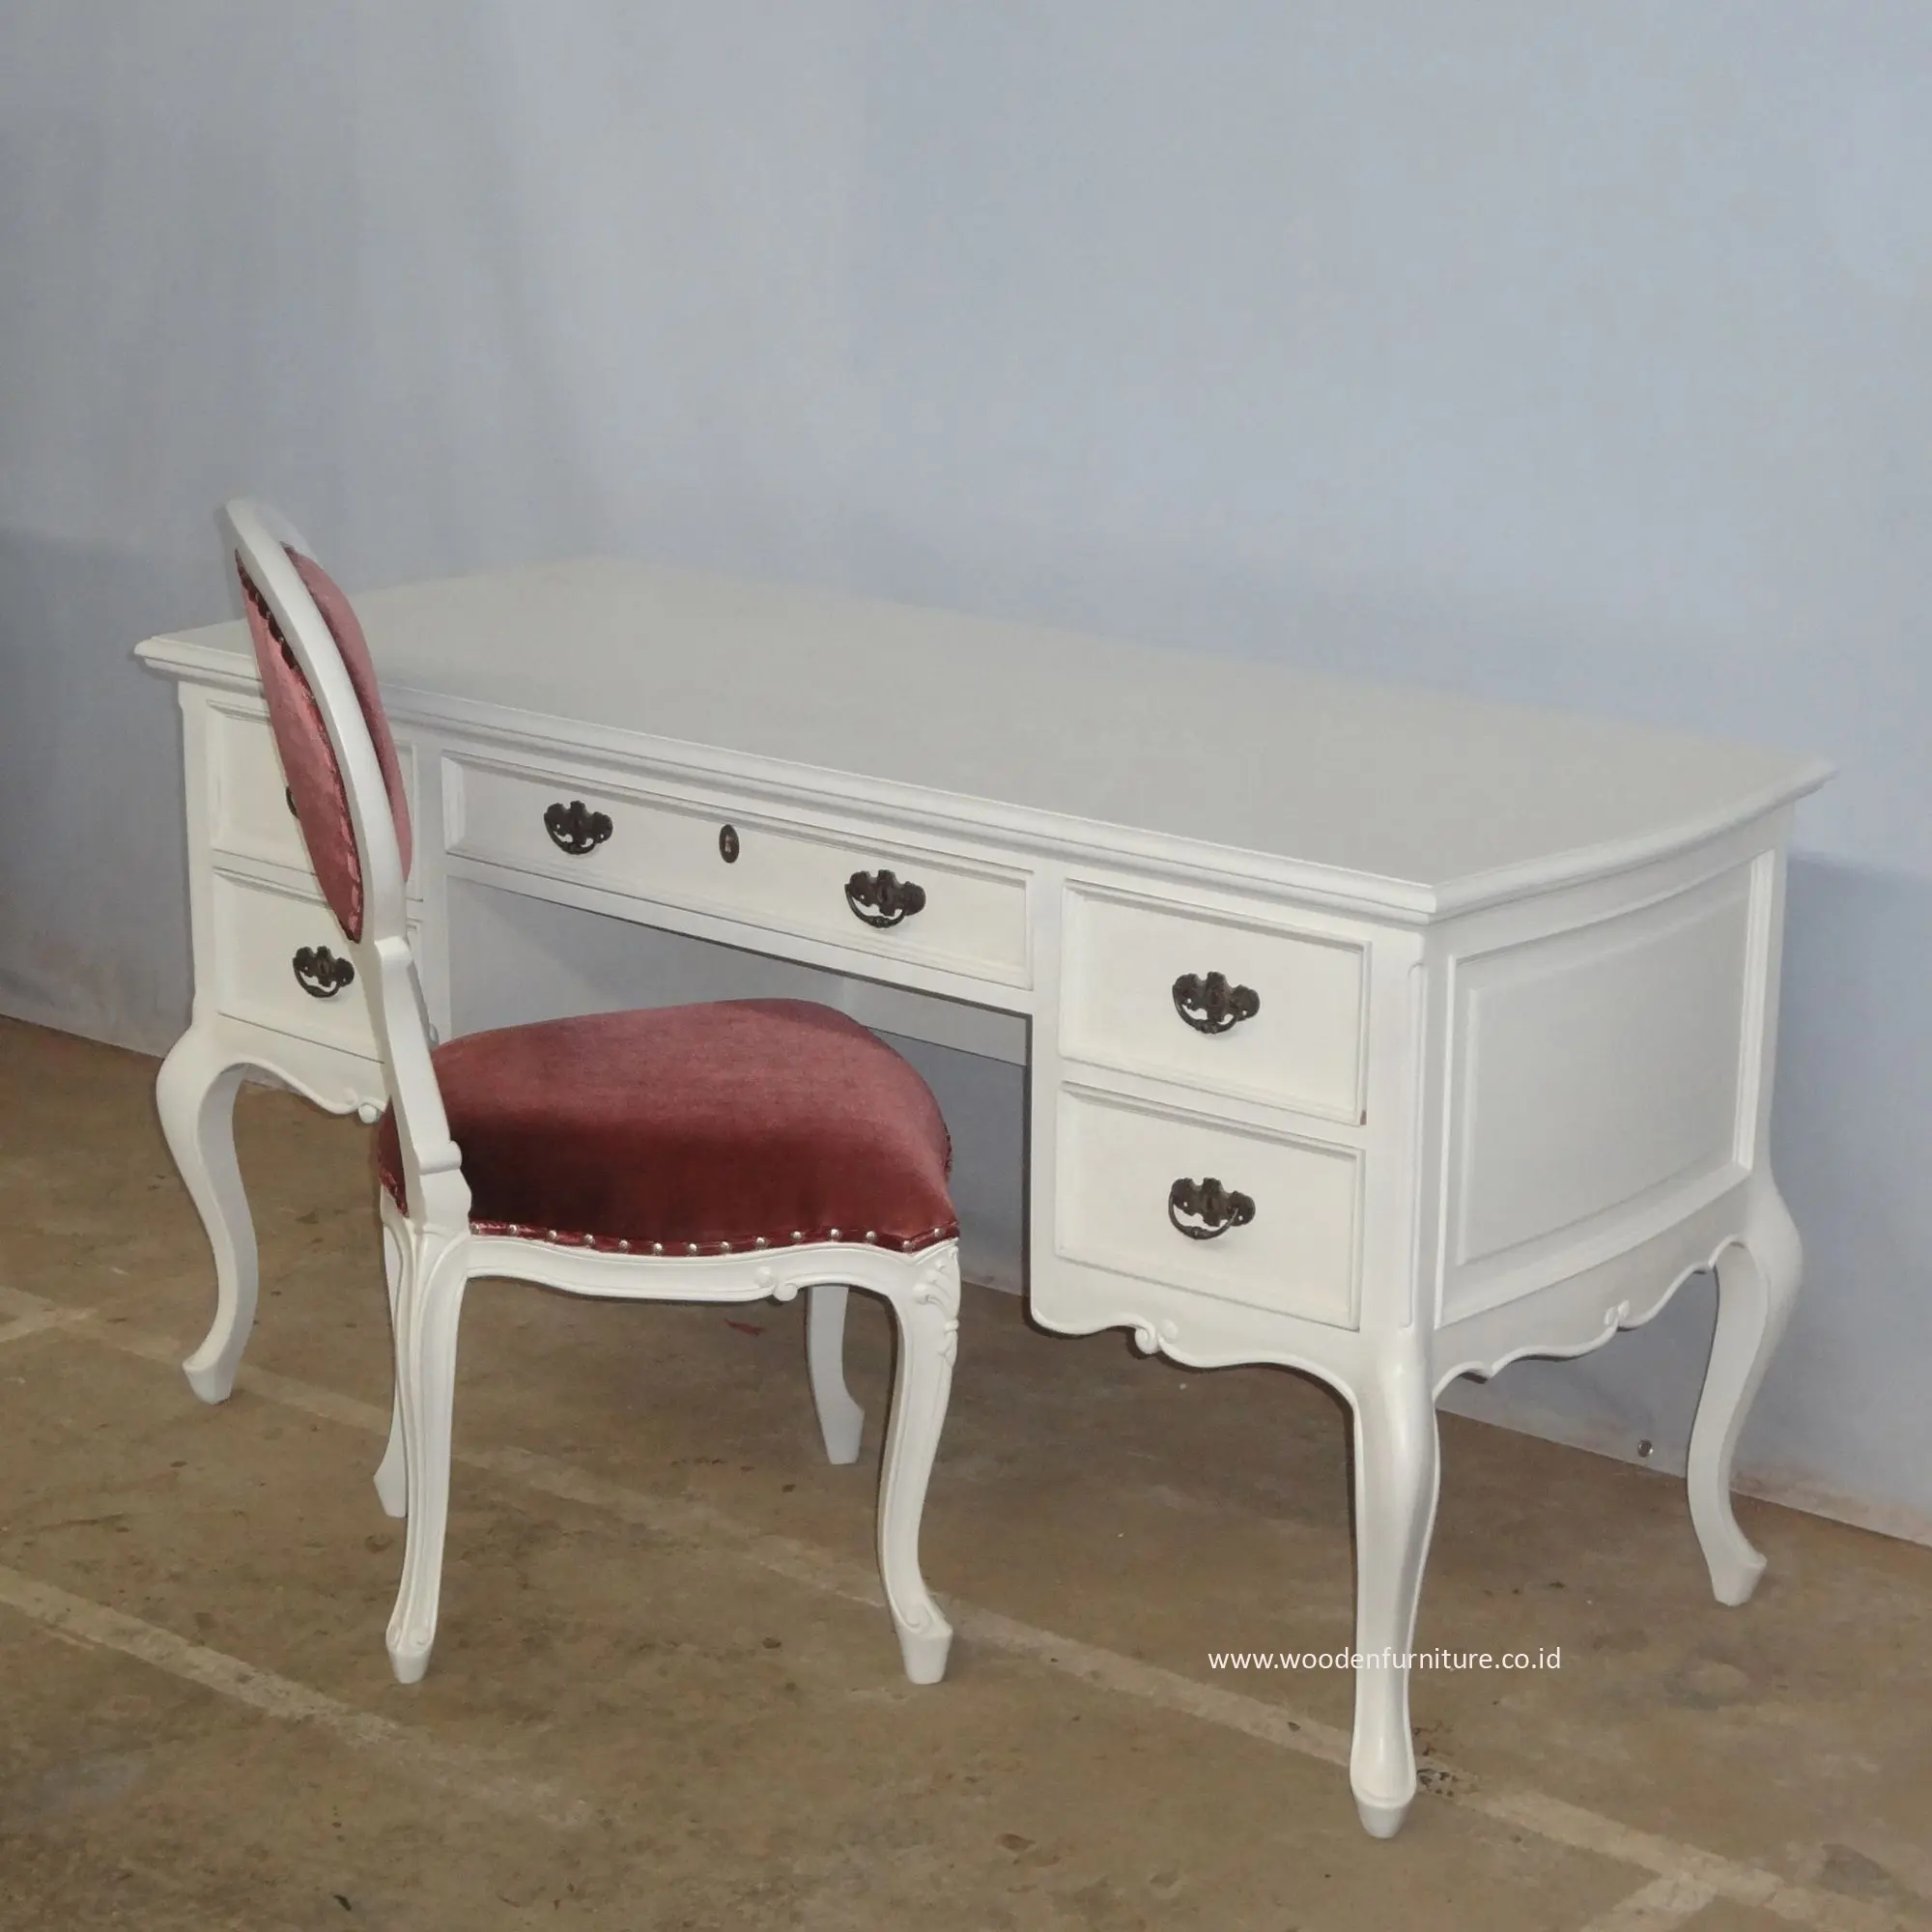 Scrivania in stile francese scrivania verniciata bianca e sedia in legno scrivania segretaria per riproduzione antica mobili per ufficio a casa